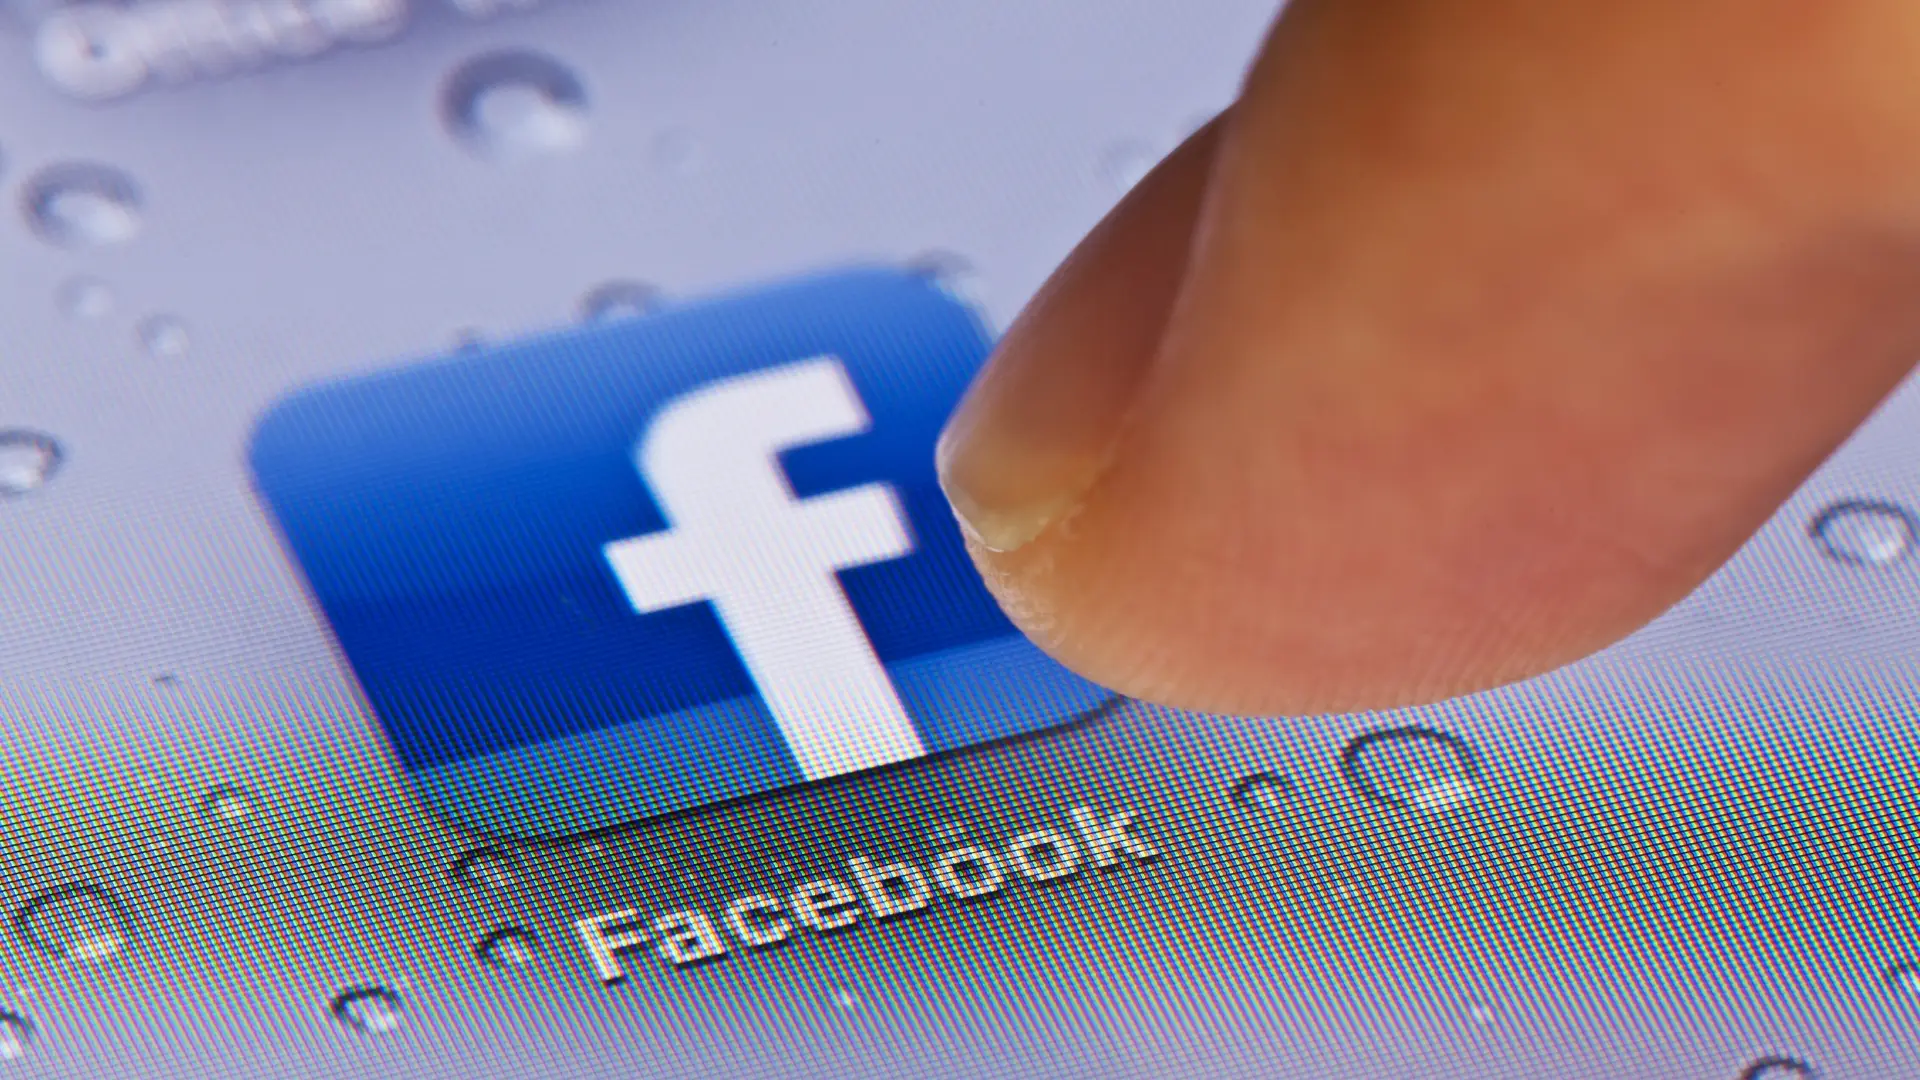 Chega regressa ao Facebook, mas página de Ventura vai continuar com restrições